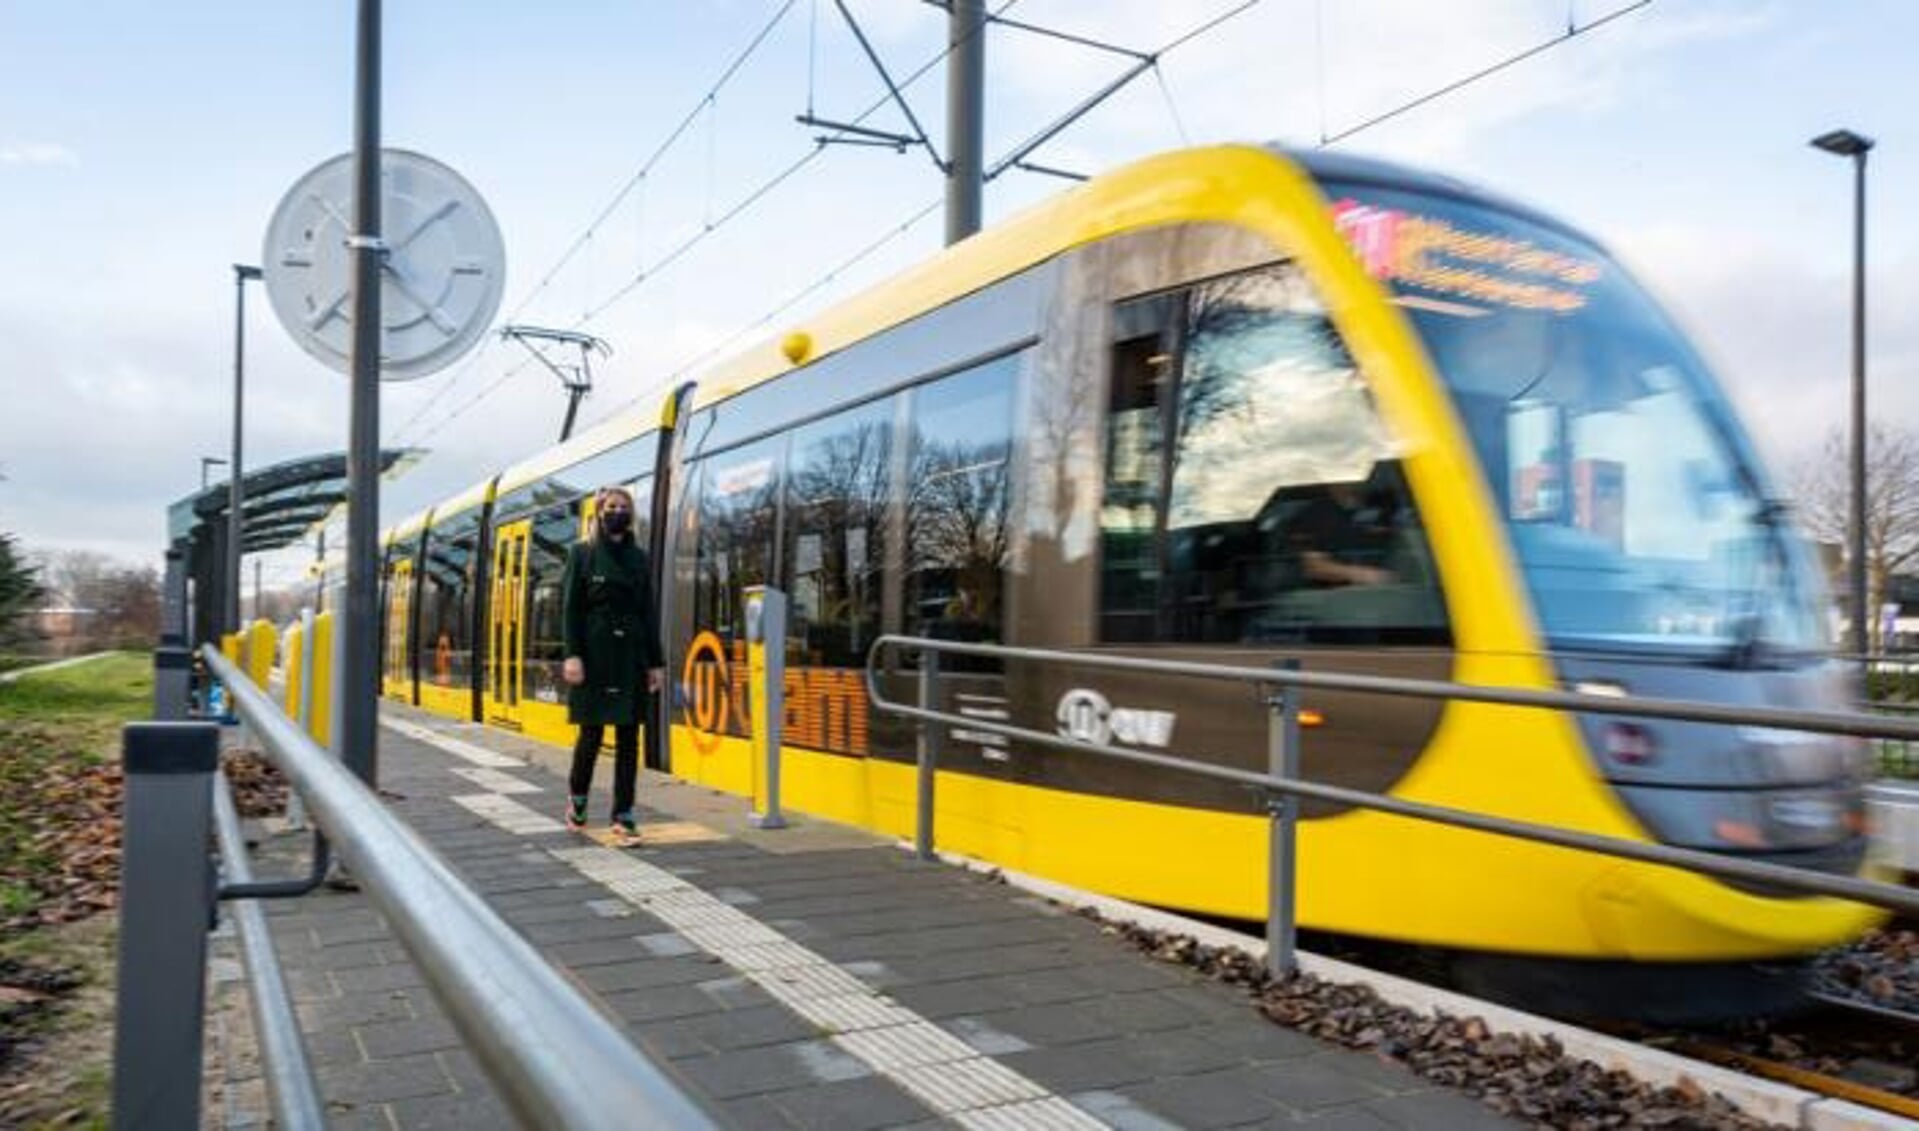 Nieuwe tram op vernieuwde halte Zuilenstein (Nieuwegein), foto: Rick Huisinga. 